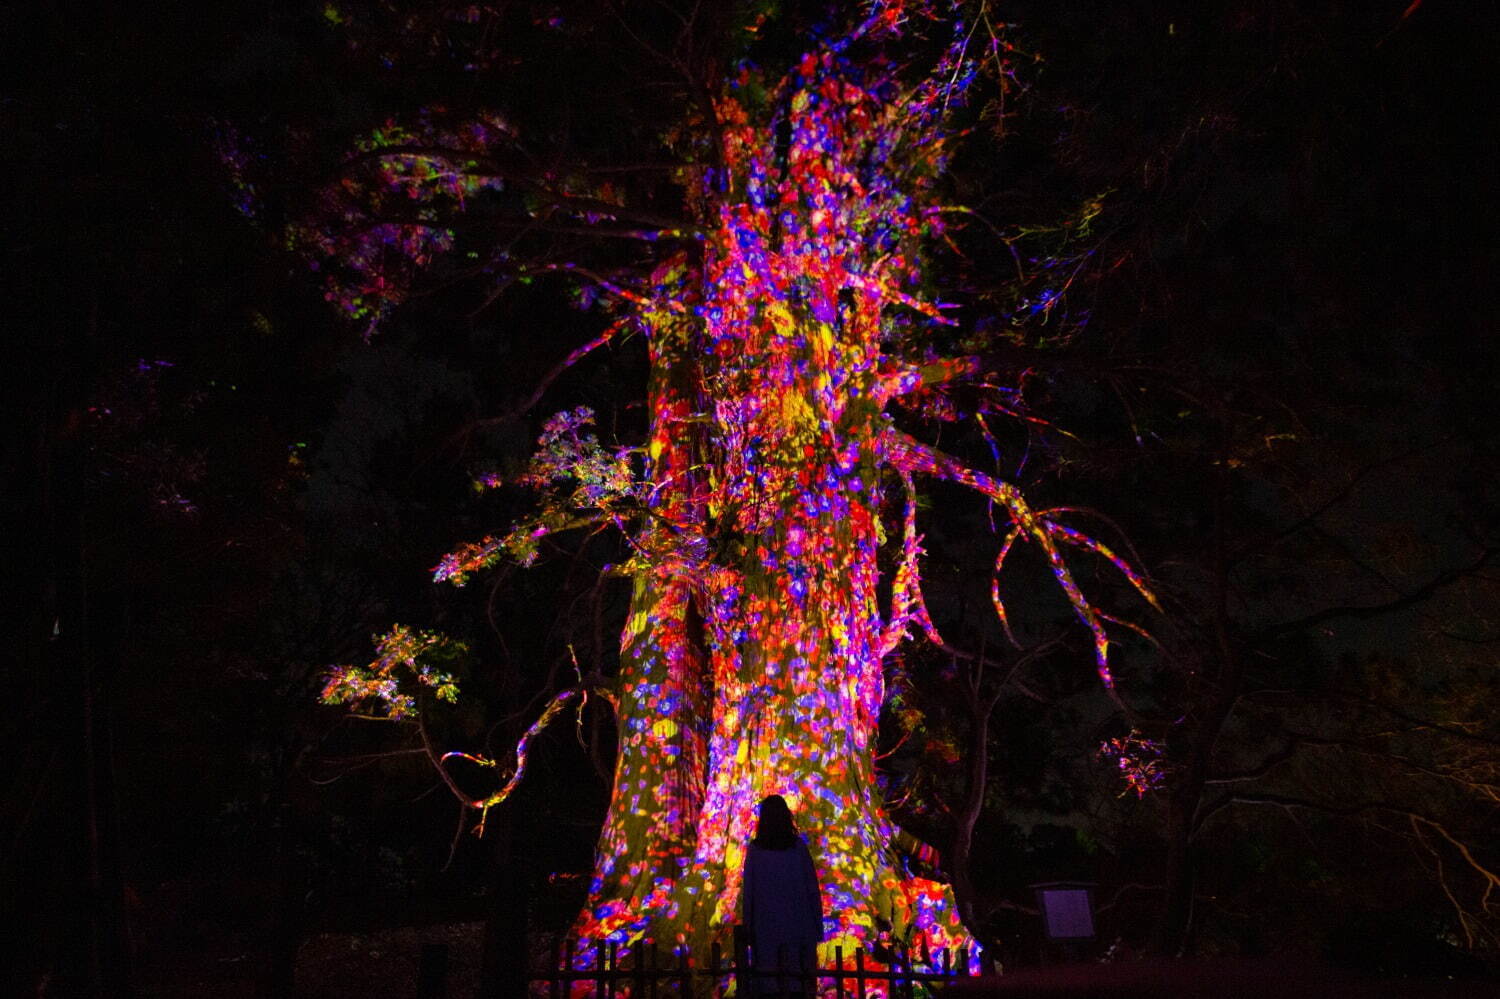 増殖する生命の巨木 - 太郎杉 / Ever Blossoming Life Tree - Giant Taro Cedar
teamLab, 2021, Digitized Nature, Sound: Hideaki Takahashi